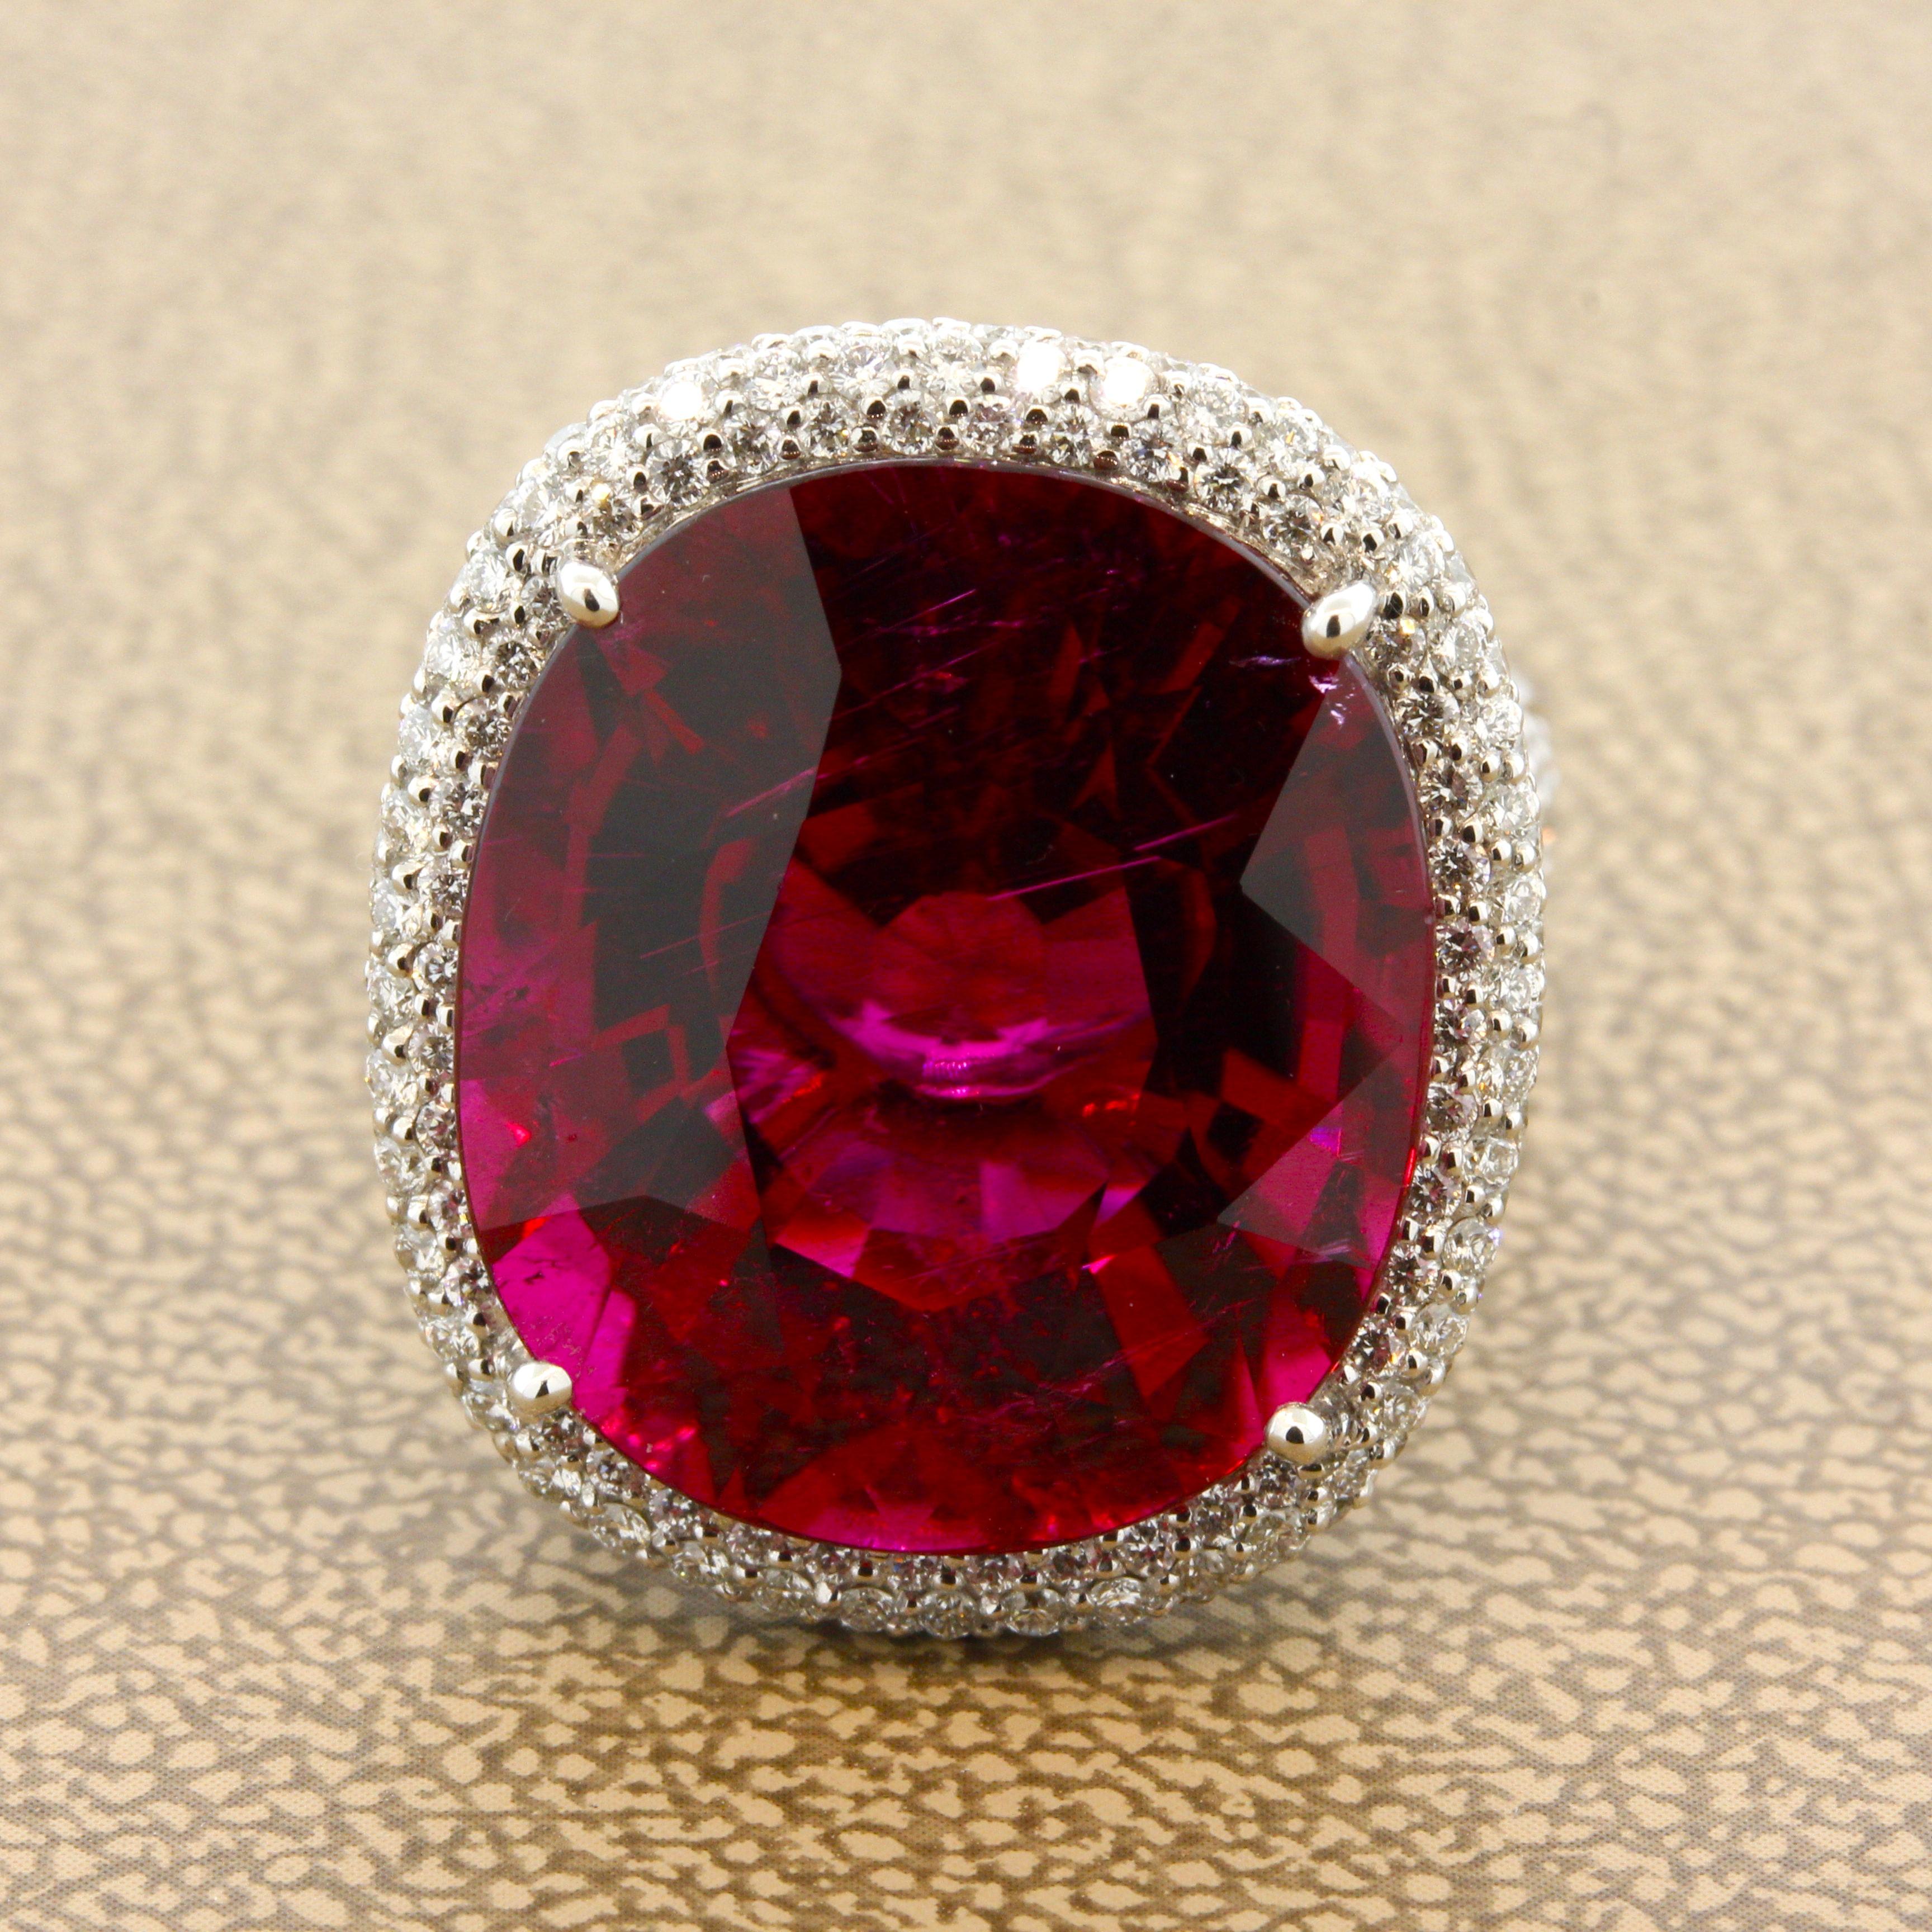 Aussi bonne que possible, cette tourmaline gemme pèse un poids impressionnant de 18,71 carats. Elle a une riche couleur rouge royal intense avec une excellente clarté, l'une des plus belles rubellites que nous ayons jamais vues. Il rivalisera avec